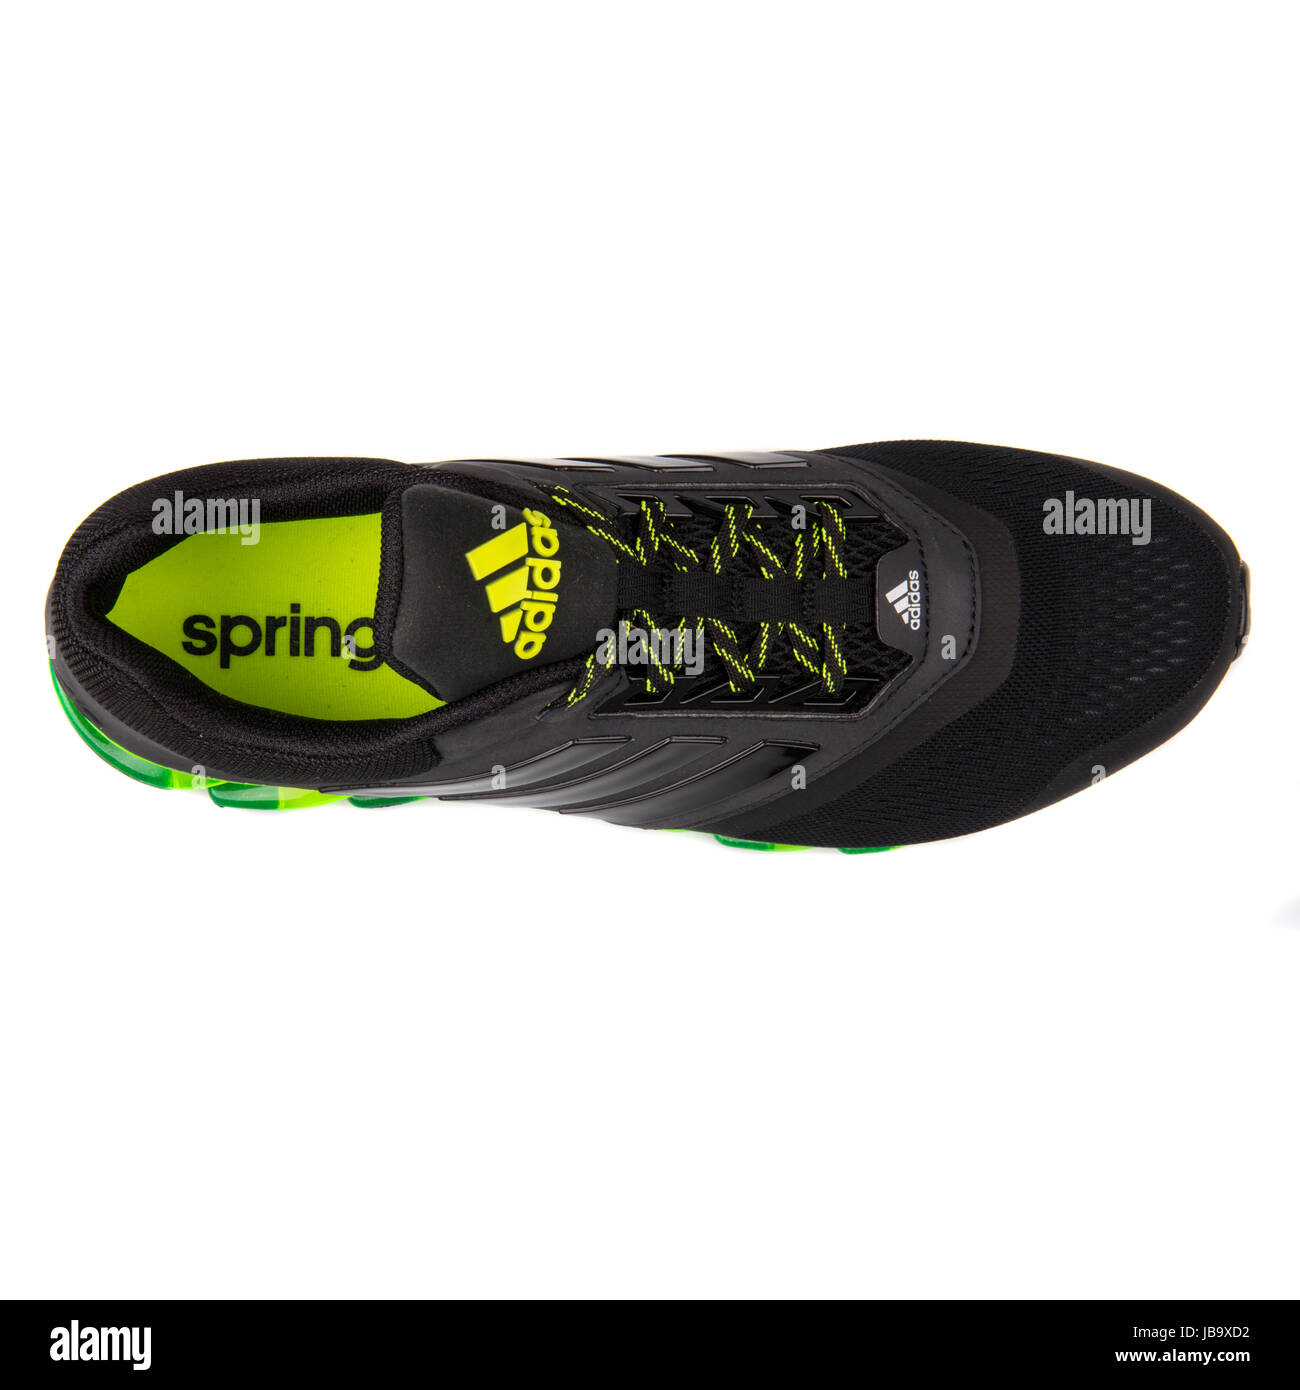 Adidas Springblade Drive 2 m negro y verde, Los hombres ejecutan Sneakers -  D69684 Fotografía de stock - Alamy